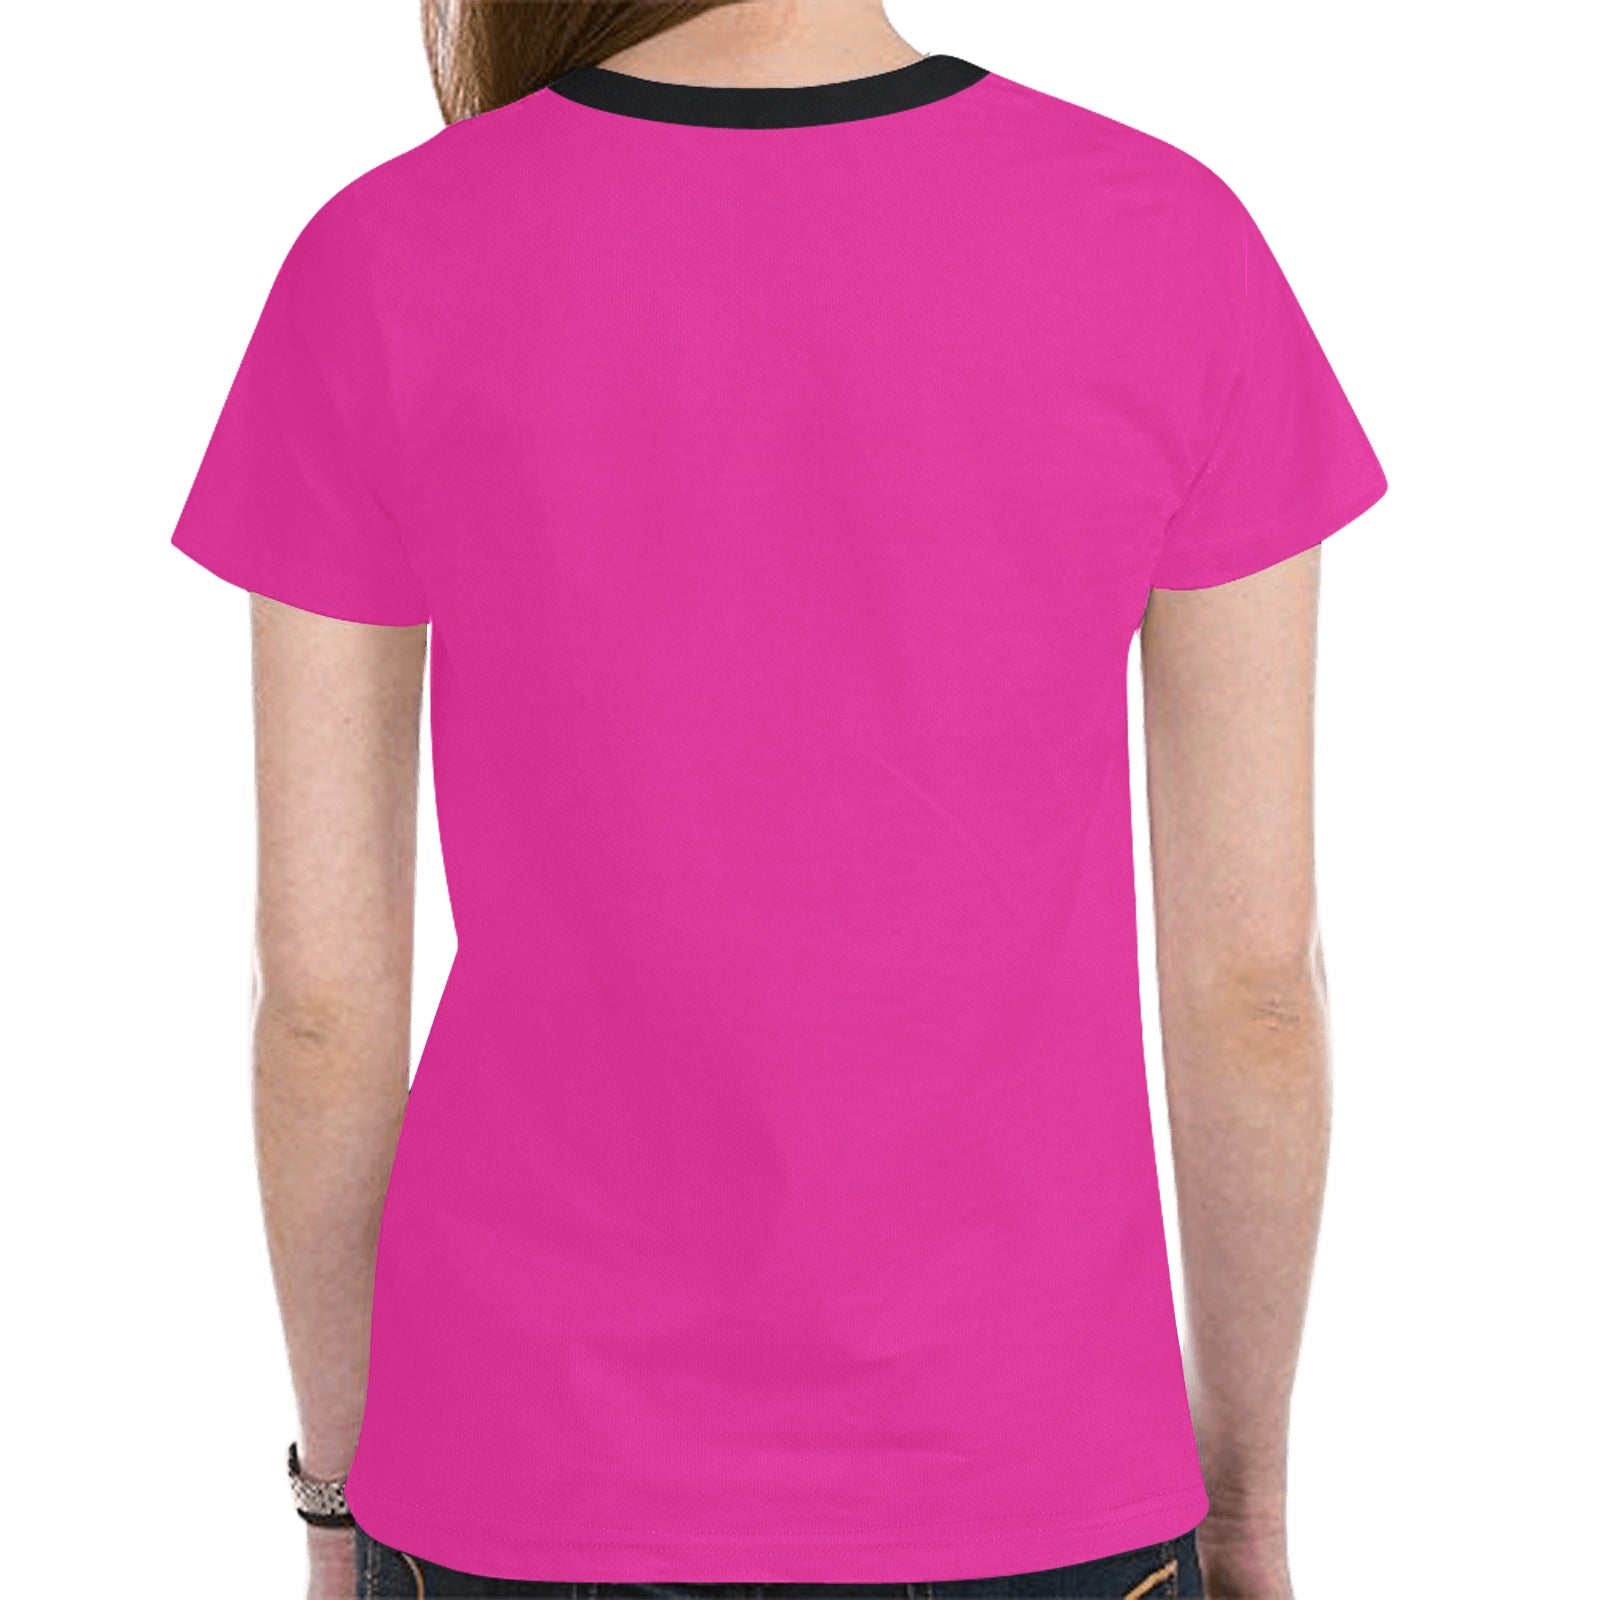 Bear Spirit Guide (Pink) T-shirt for Women